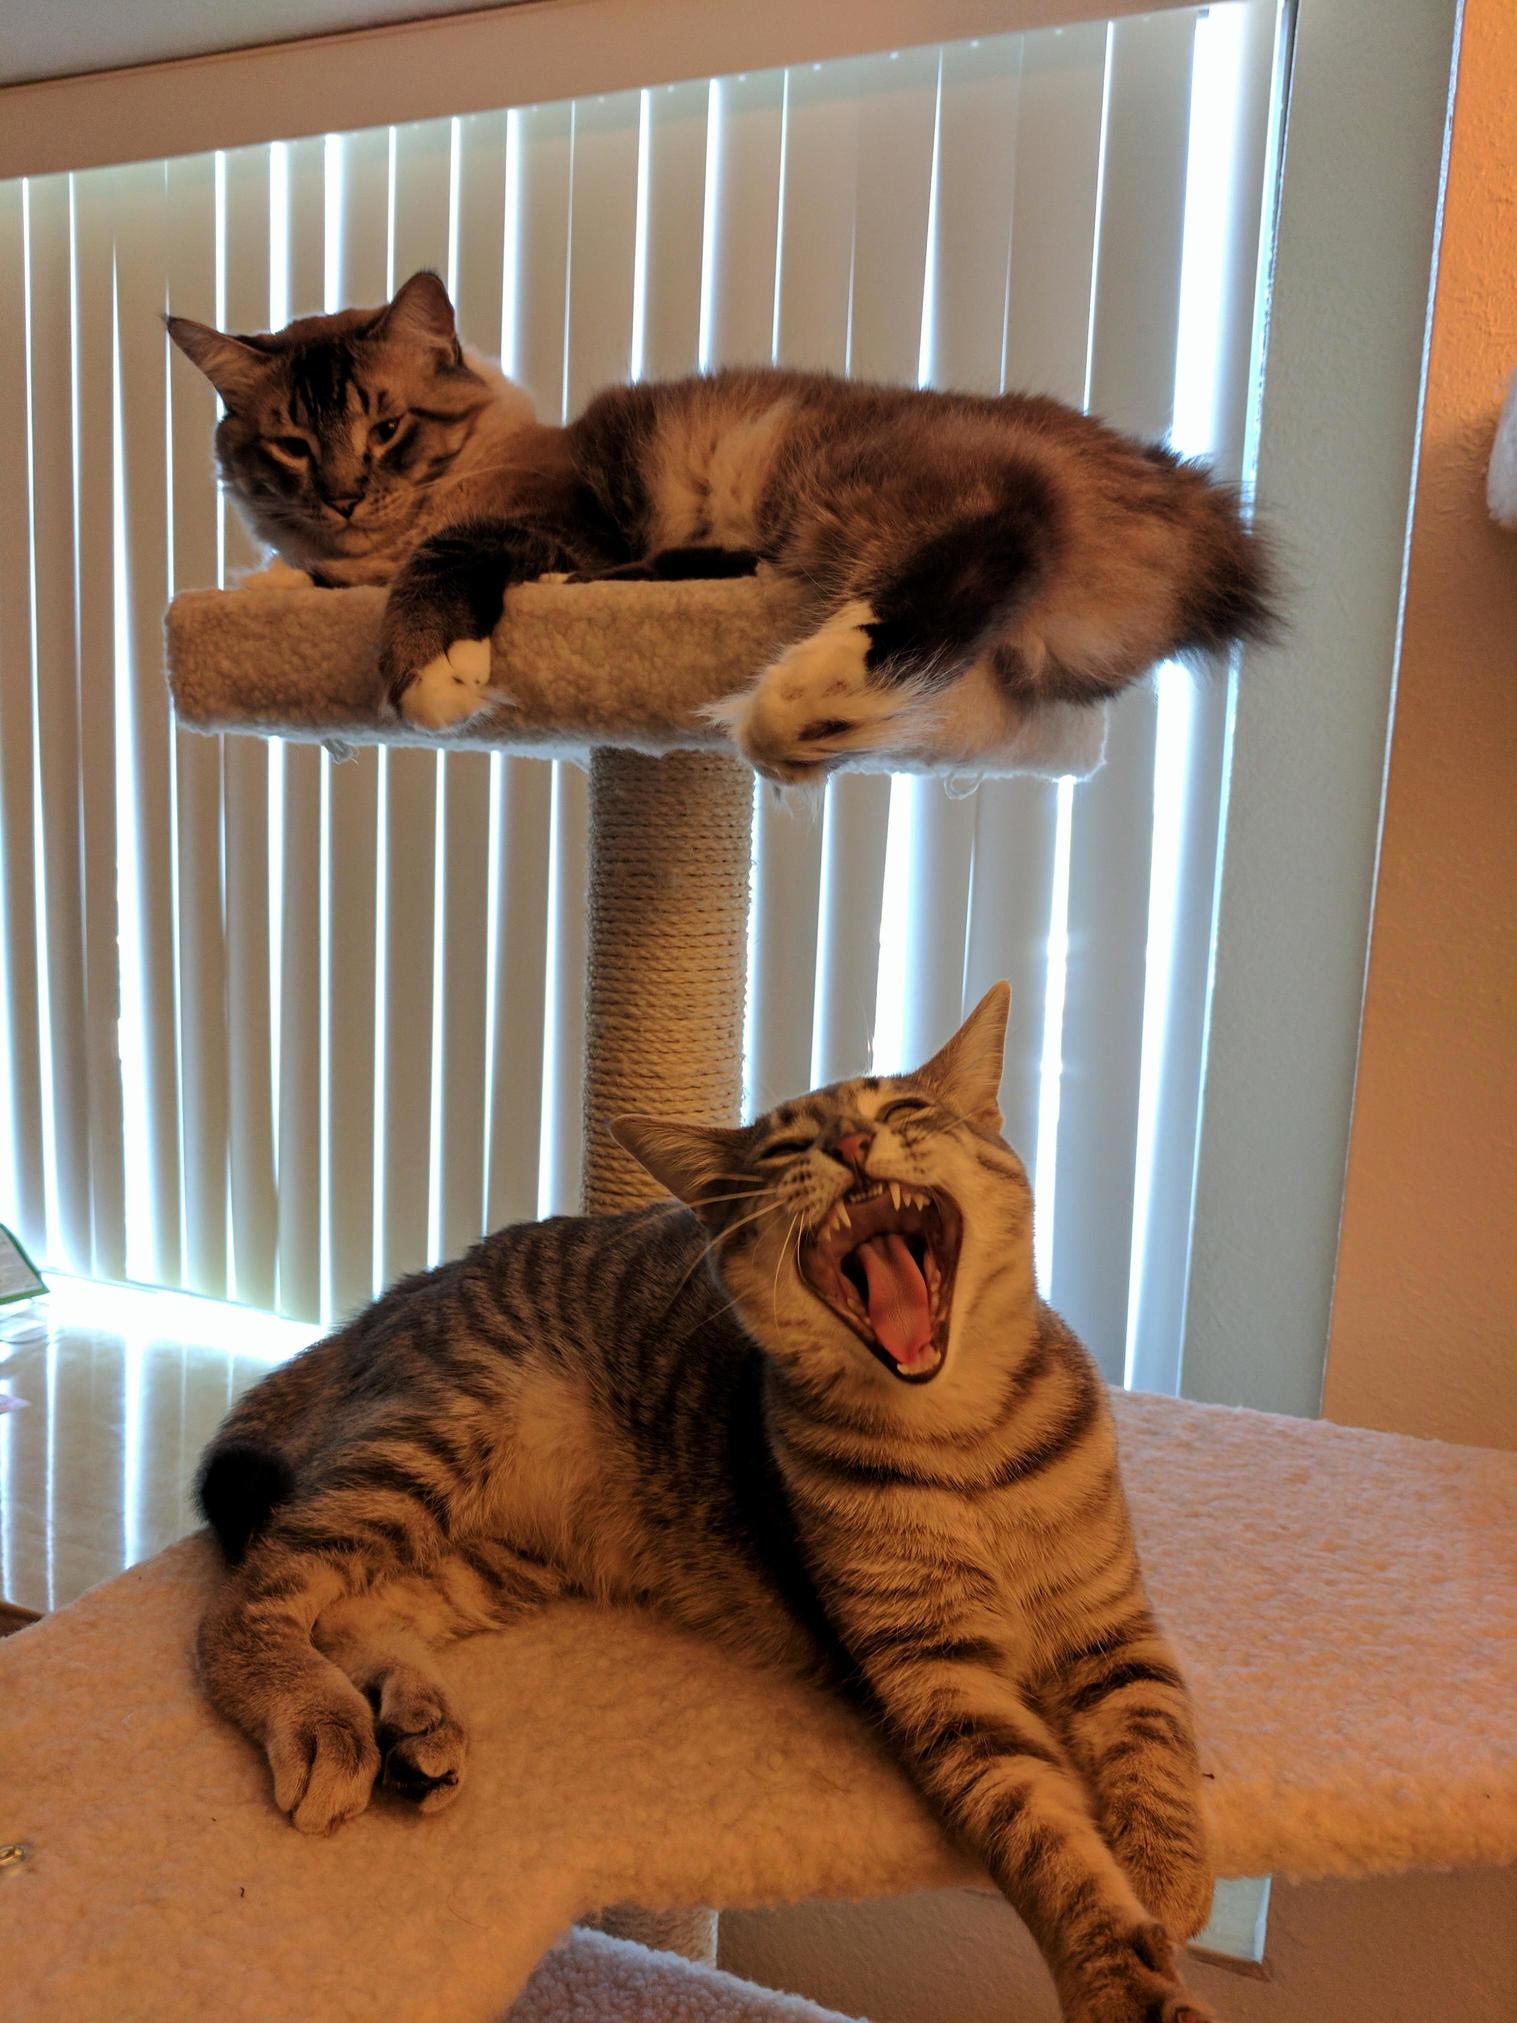 A big yawn.